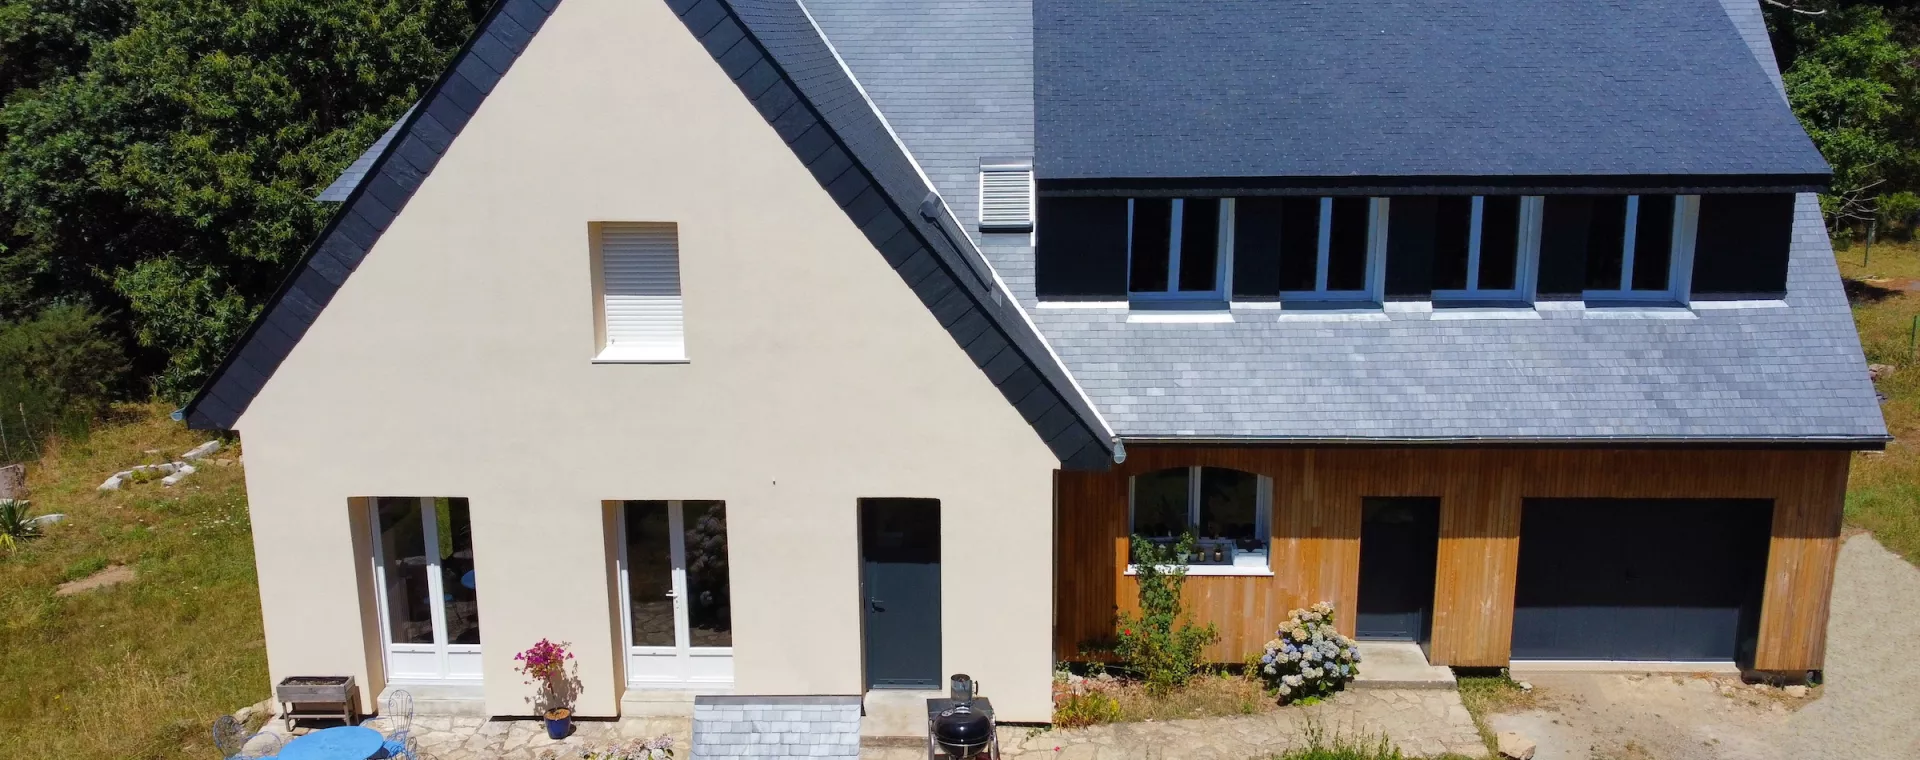 Rénovation énergétique et réaménagement d'une maison à Lorient